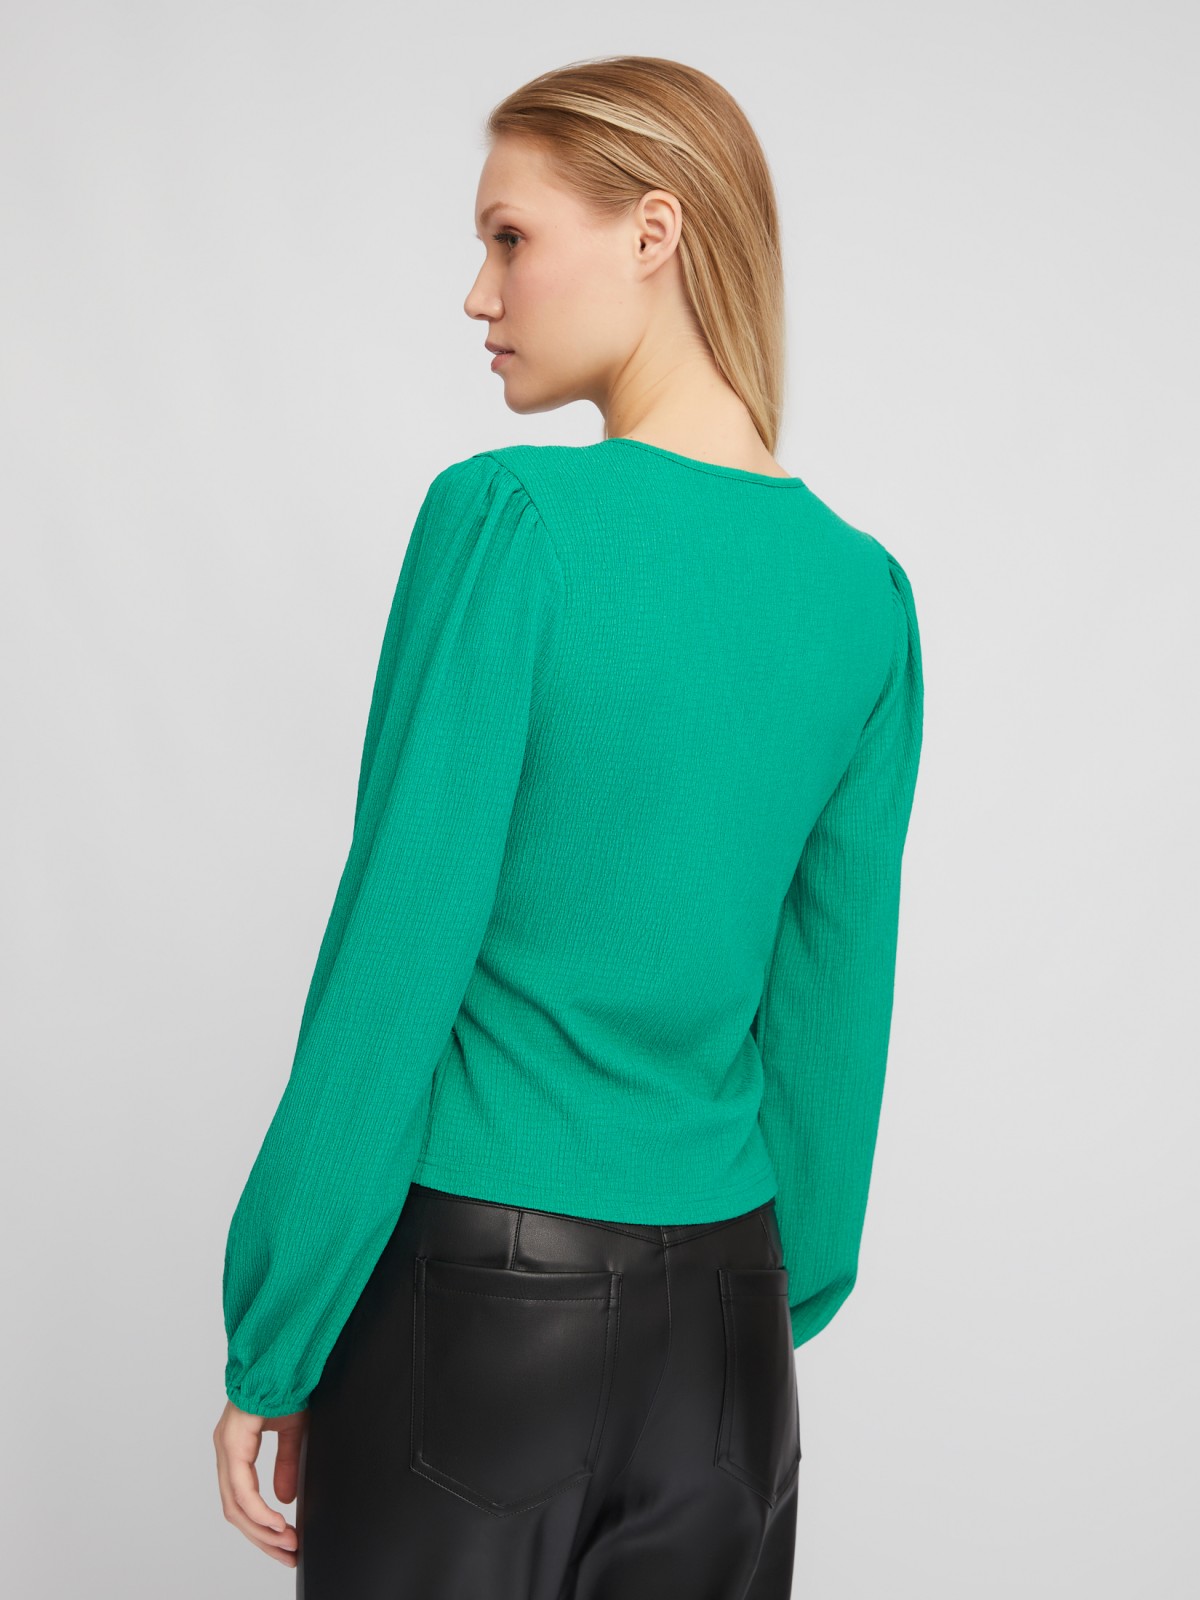 Укороченный топ-блузка на запах с объёмным рукавом zolla 024111162201, цвет зеленый, размер XS - фото 6